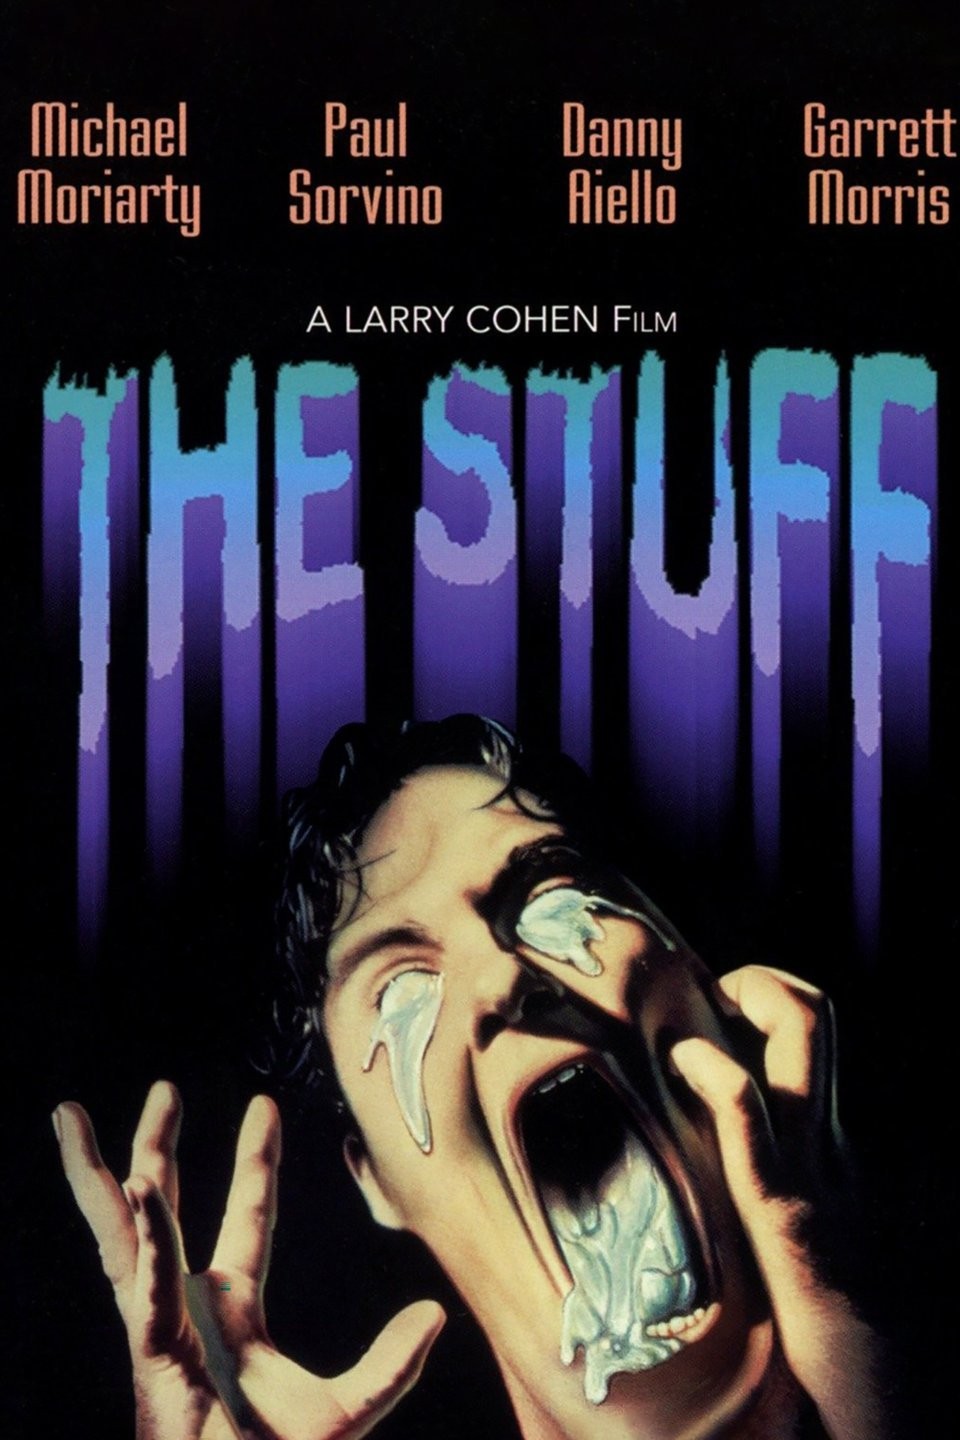  The Stuff (Special Edition) [Blu-ray] : Michael Moriarity, Paul  Sorvino, Danny Aiello, Garrett Morris, Andrea Marcovicci, Scott Bloom,  Larry Cohen: Movies & TV